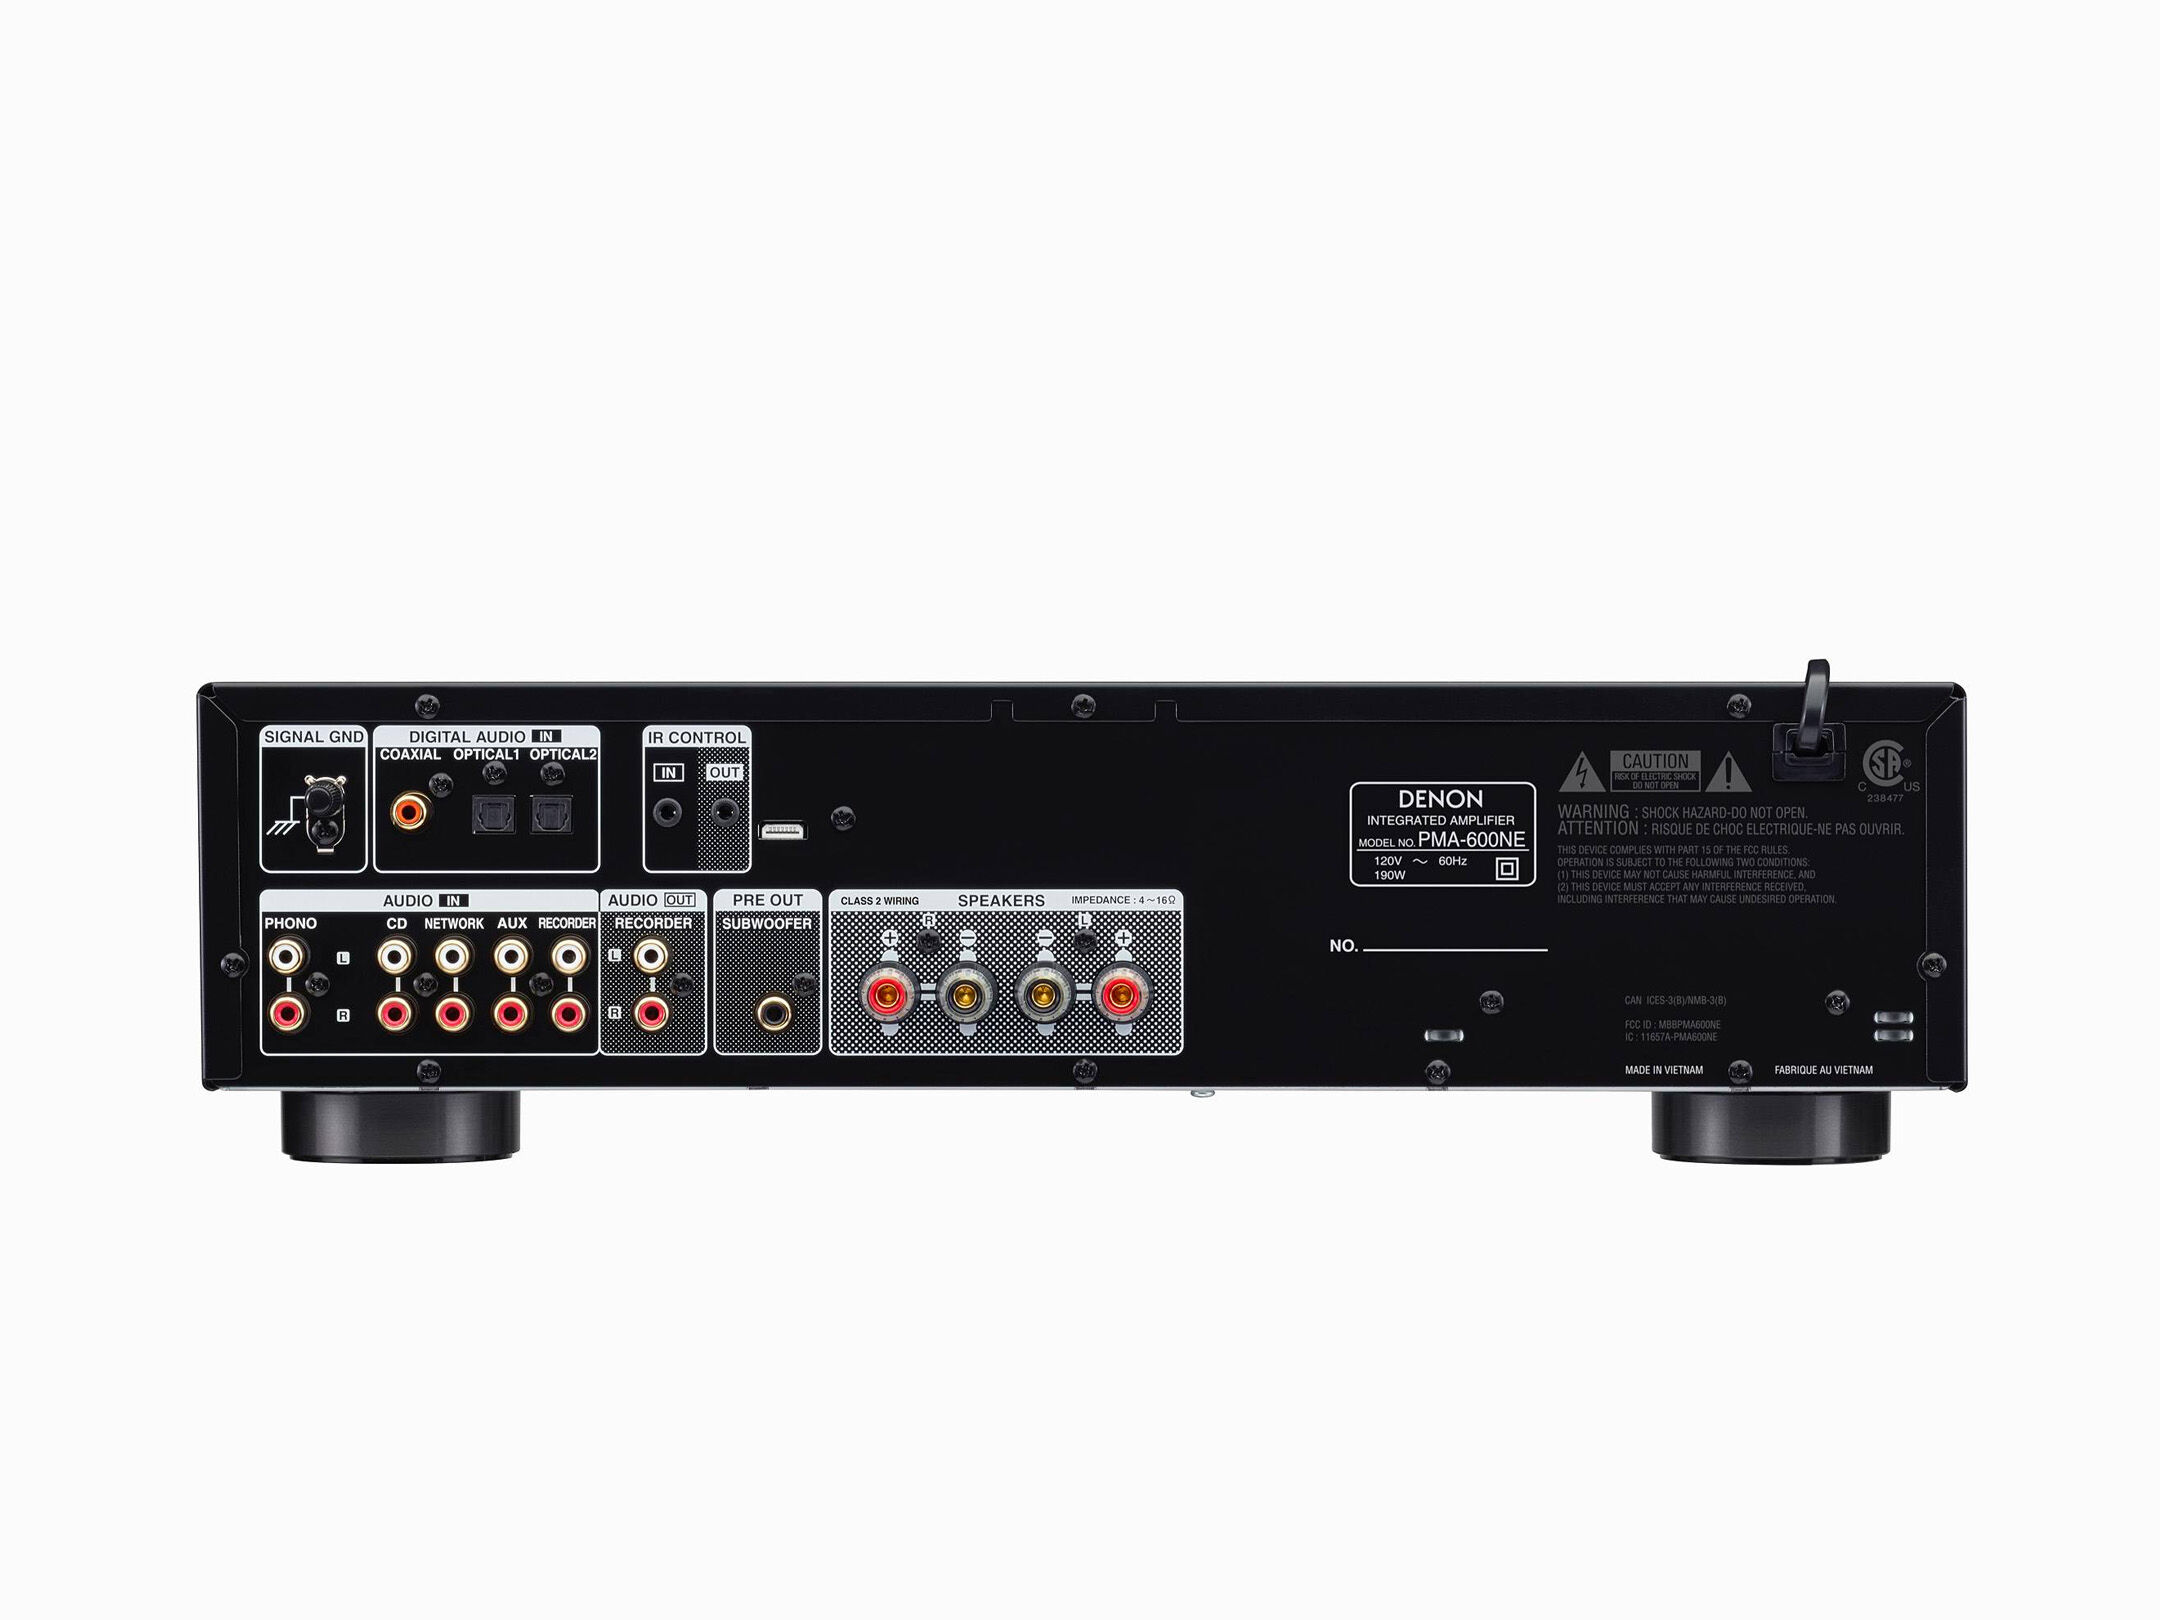 PMA-600NE - 2 Ch. 70W Integrated Amplifier | Denon - US